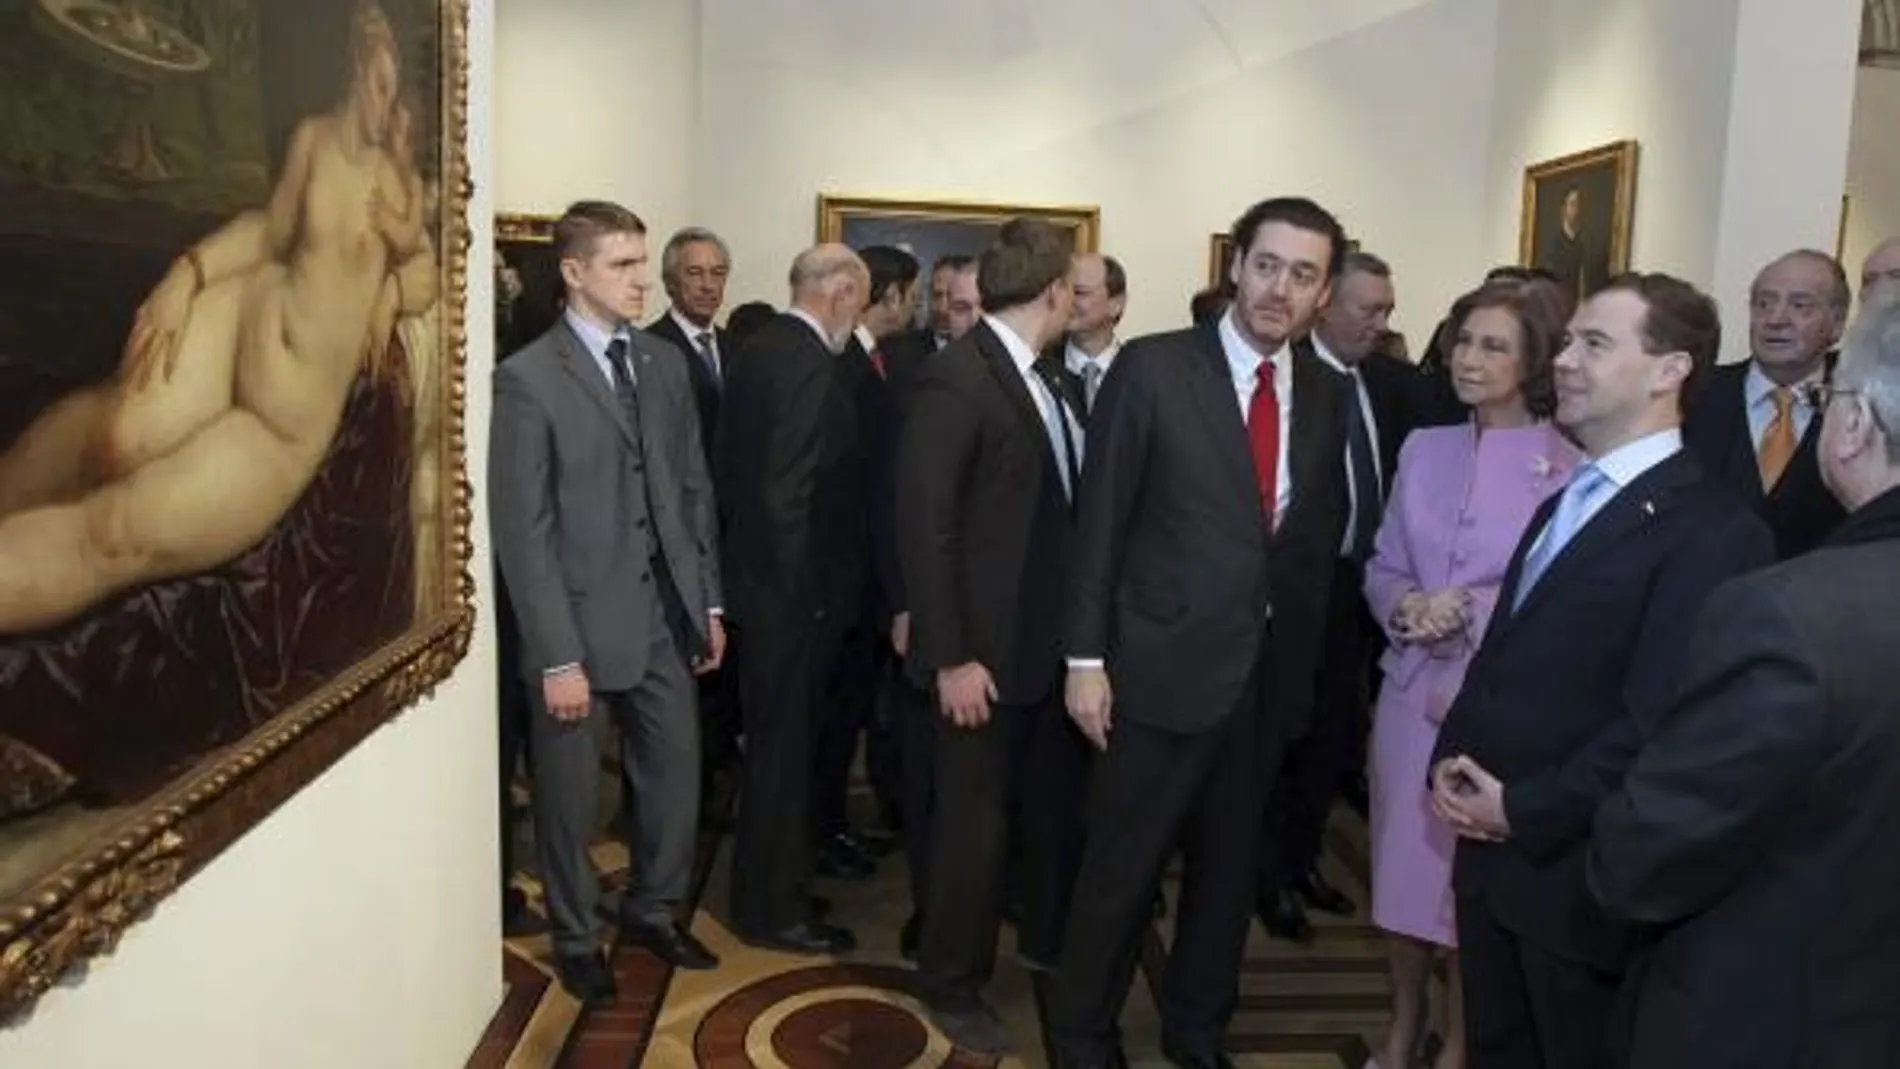 Los Reyes visitaron la exposición junto al presidente ruso y el director del Prado